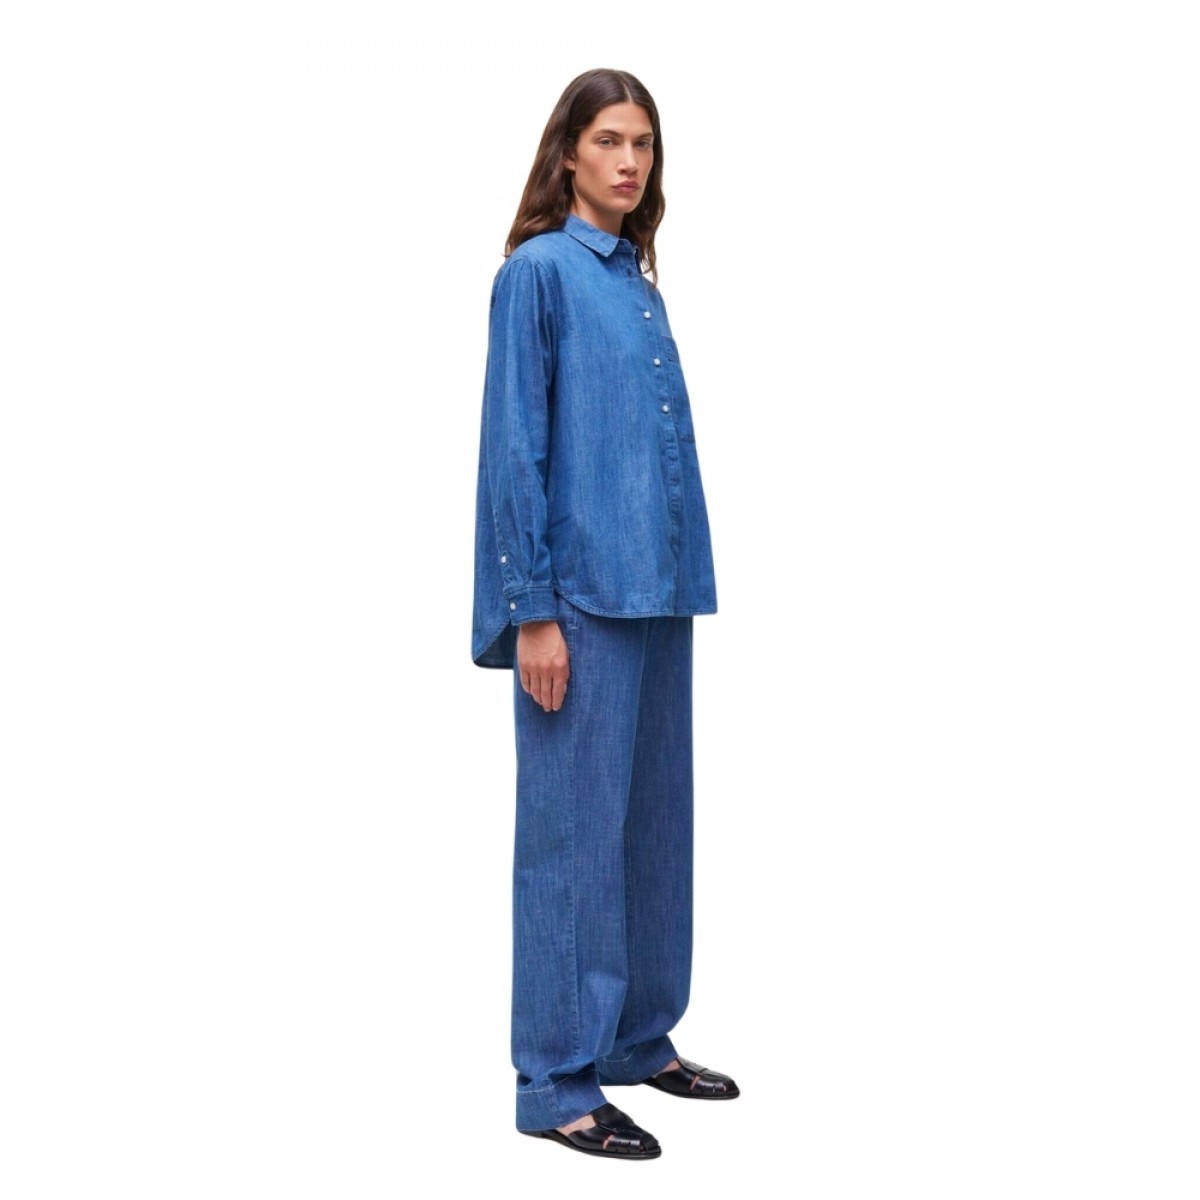 lynette shirt denim - blue jeans 